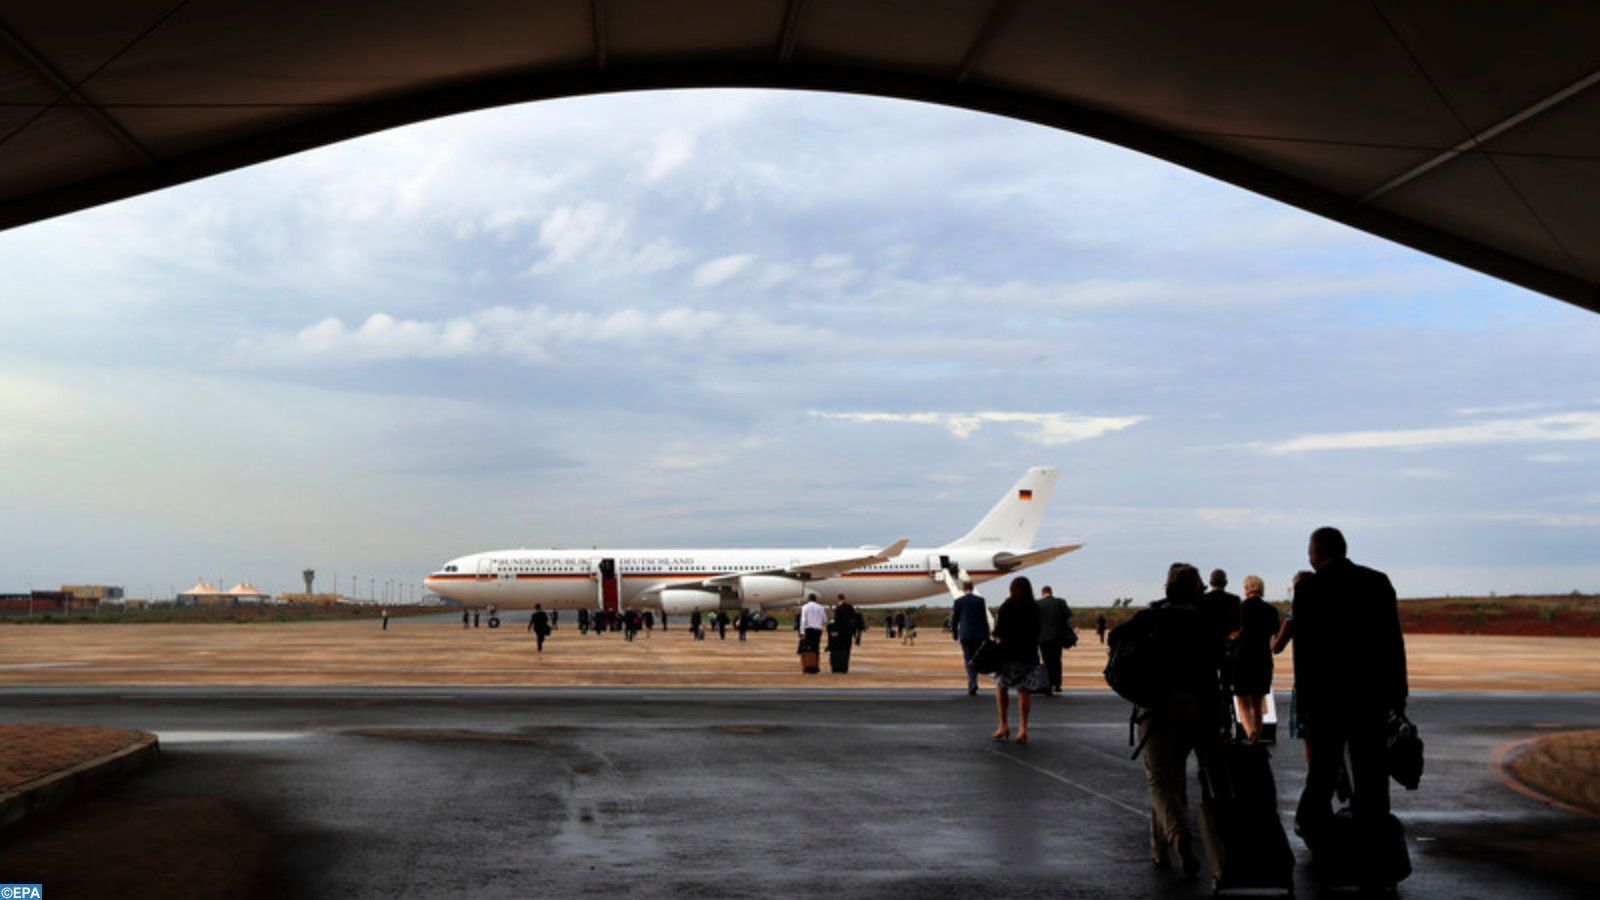 Transport aérien : L’Iata félicite le Sénégal après l’assouplissement des mesures anti-Covid